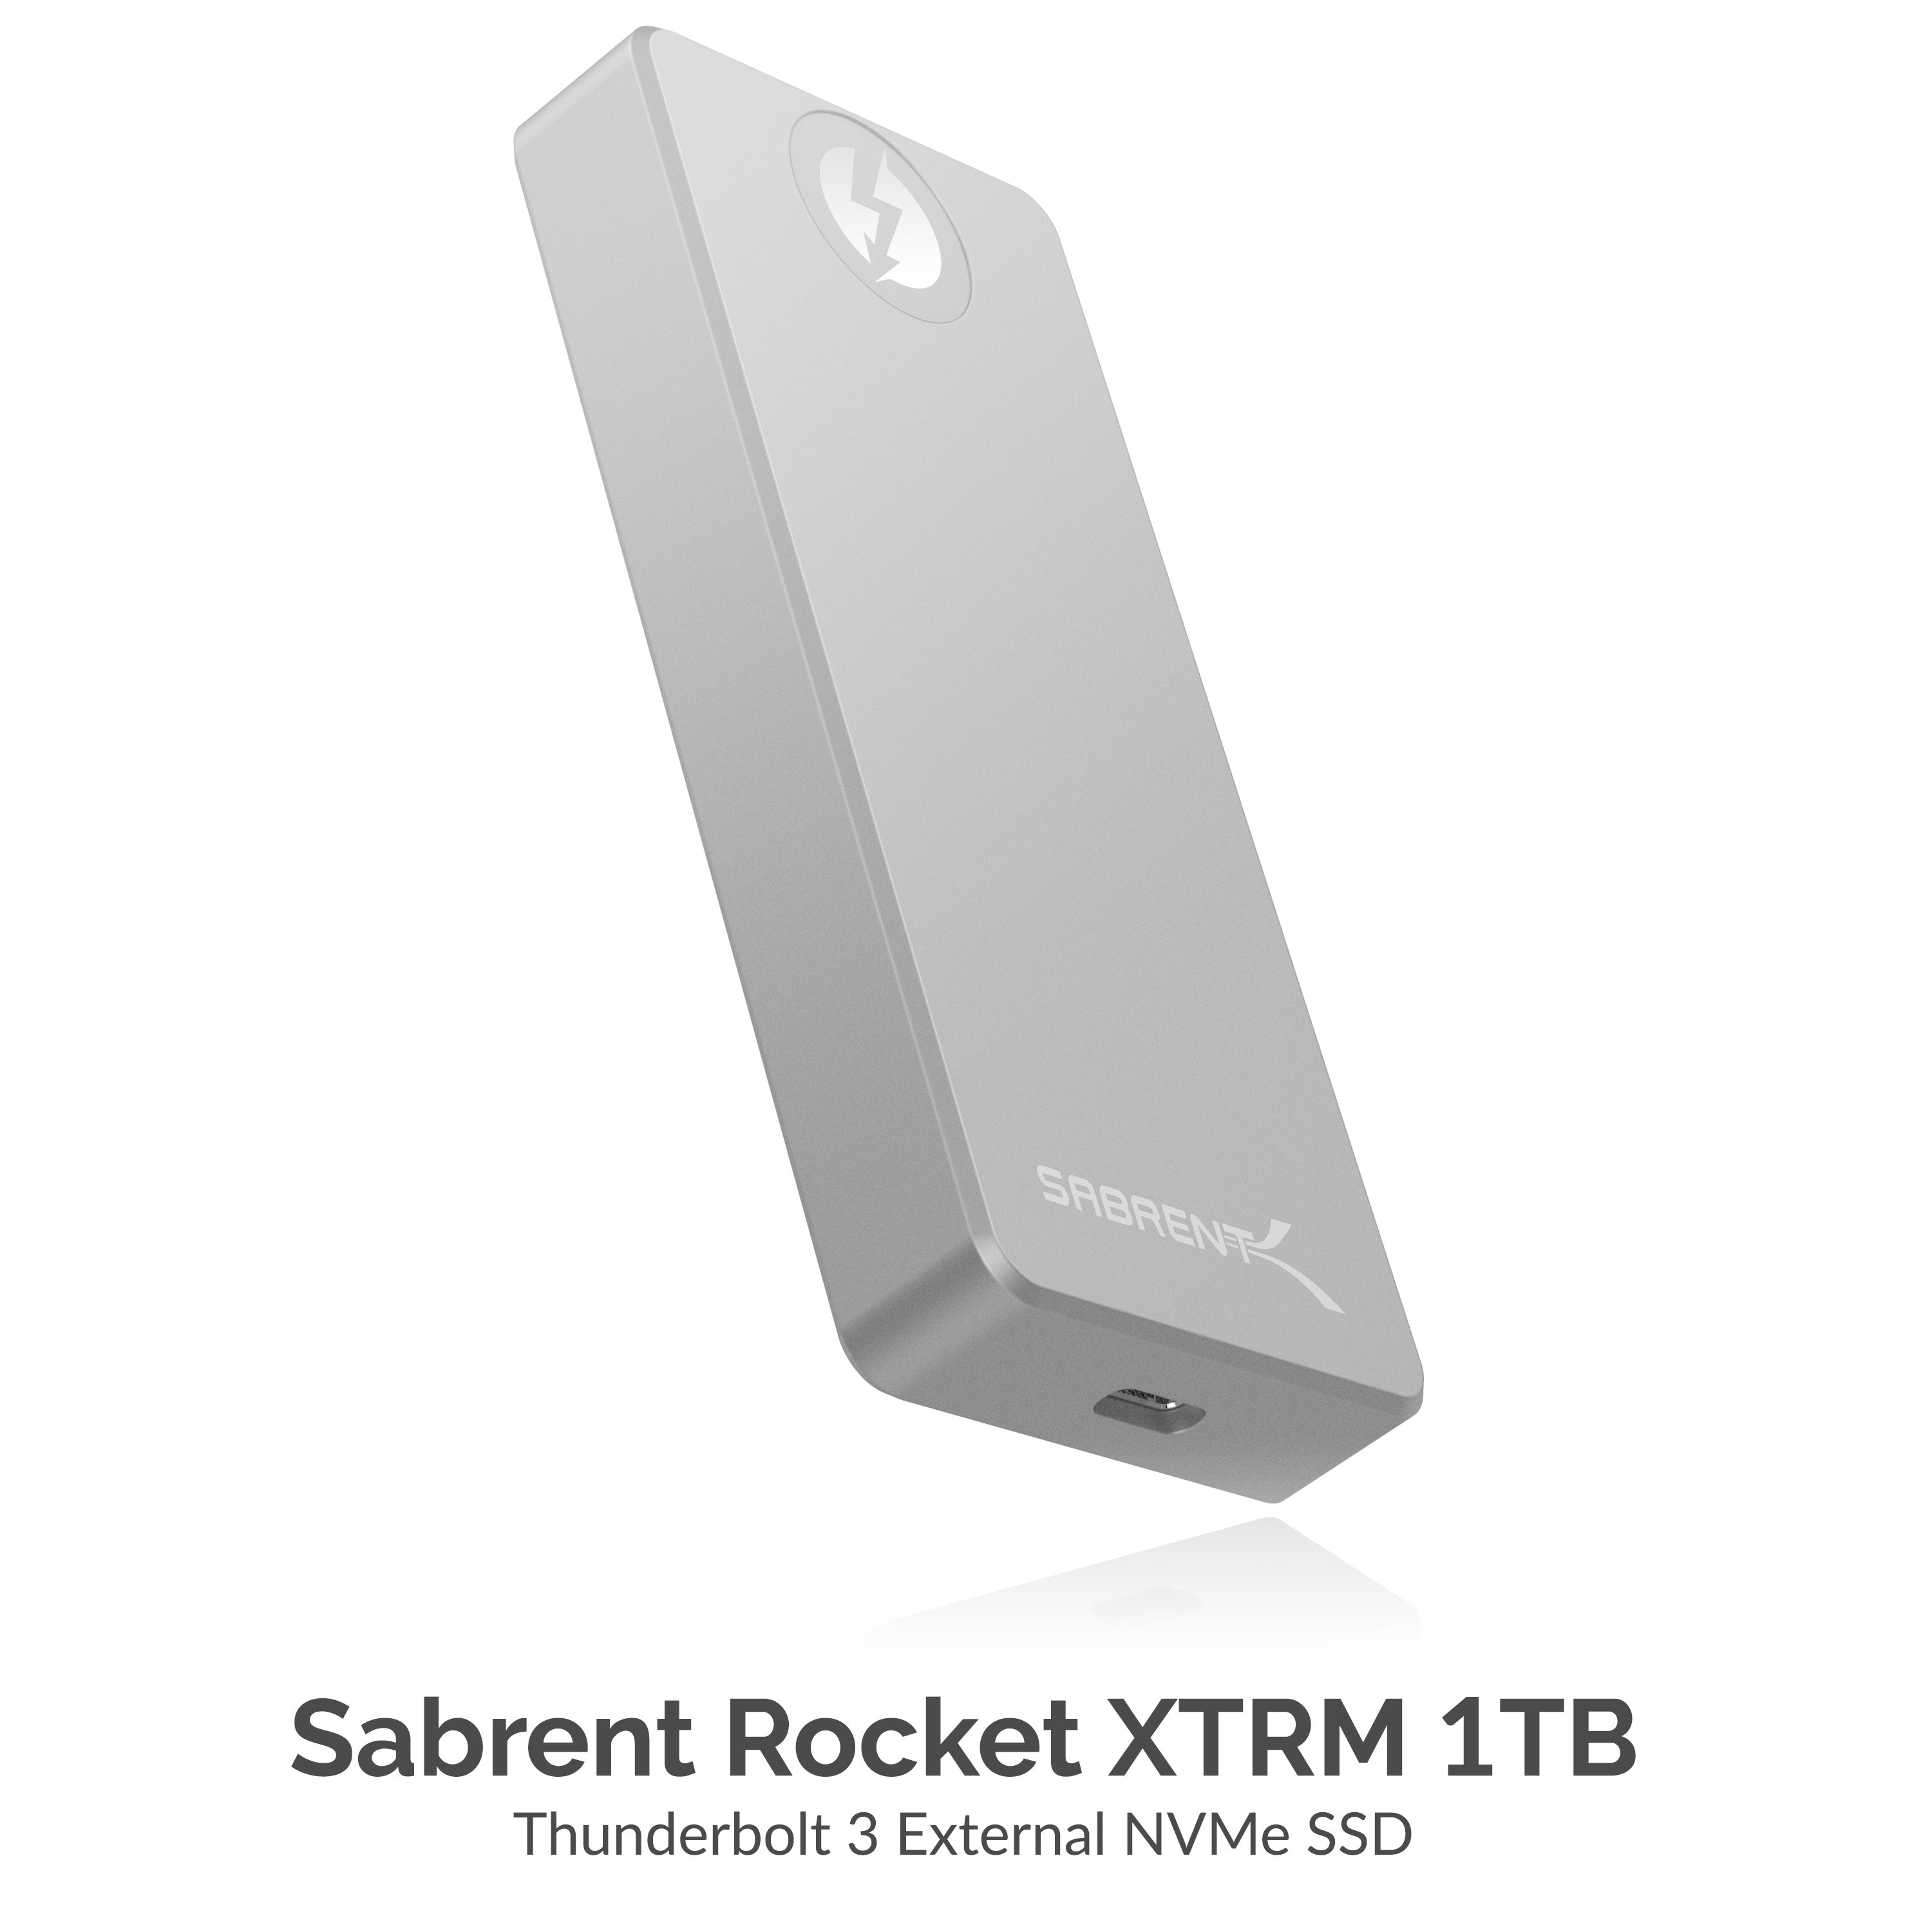 eXtreme Thunderbolt 3 Portable External SSD